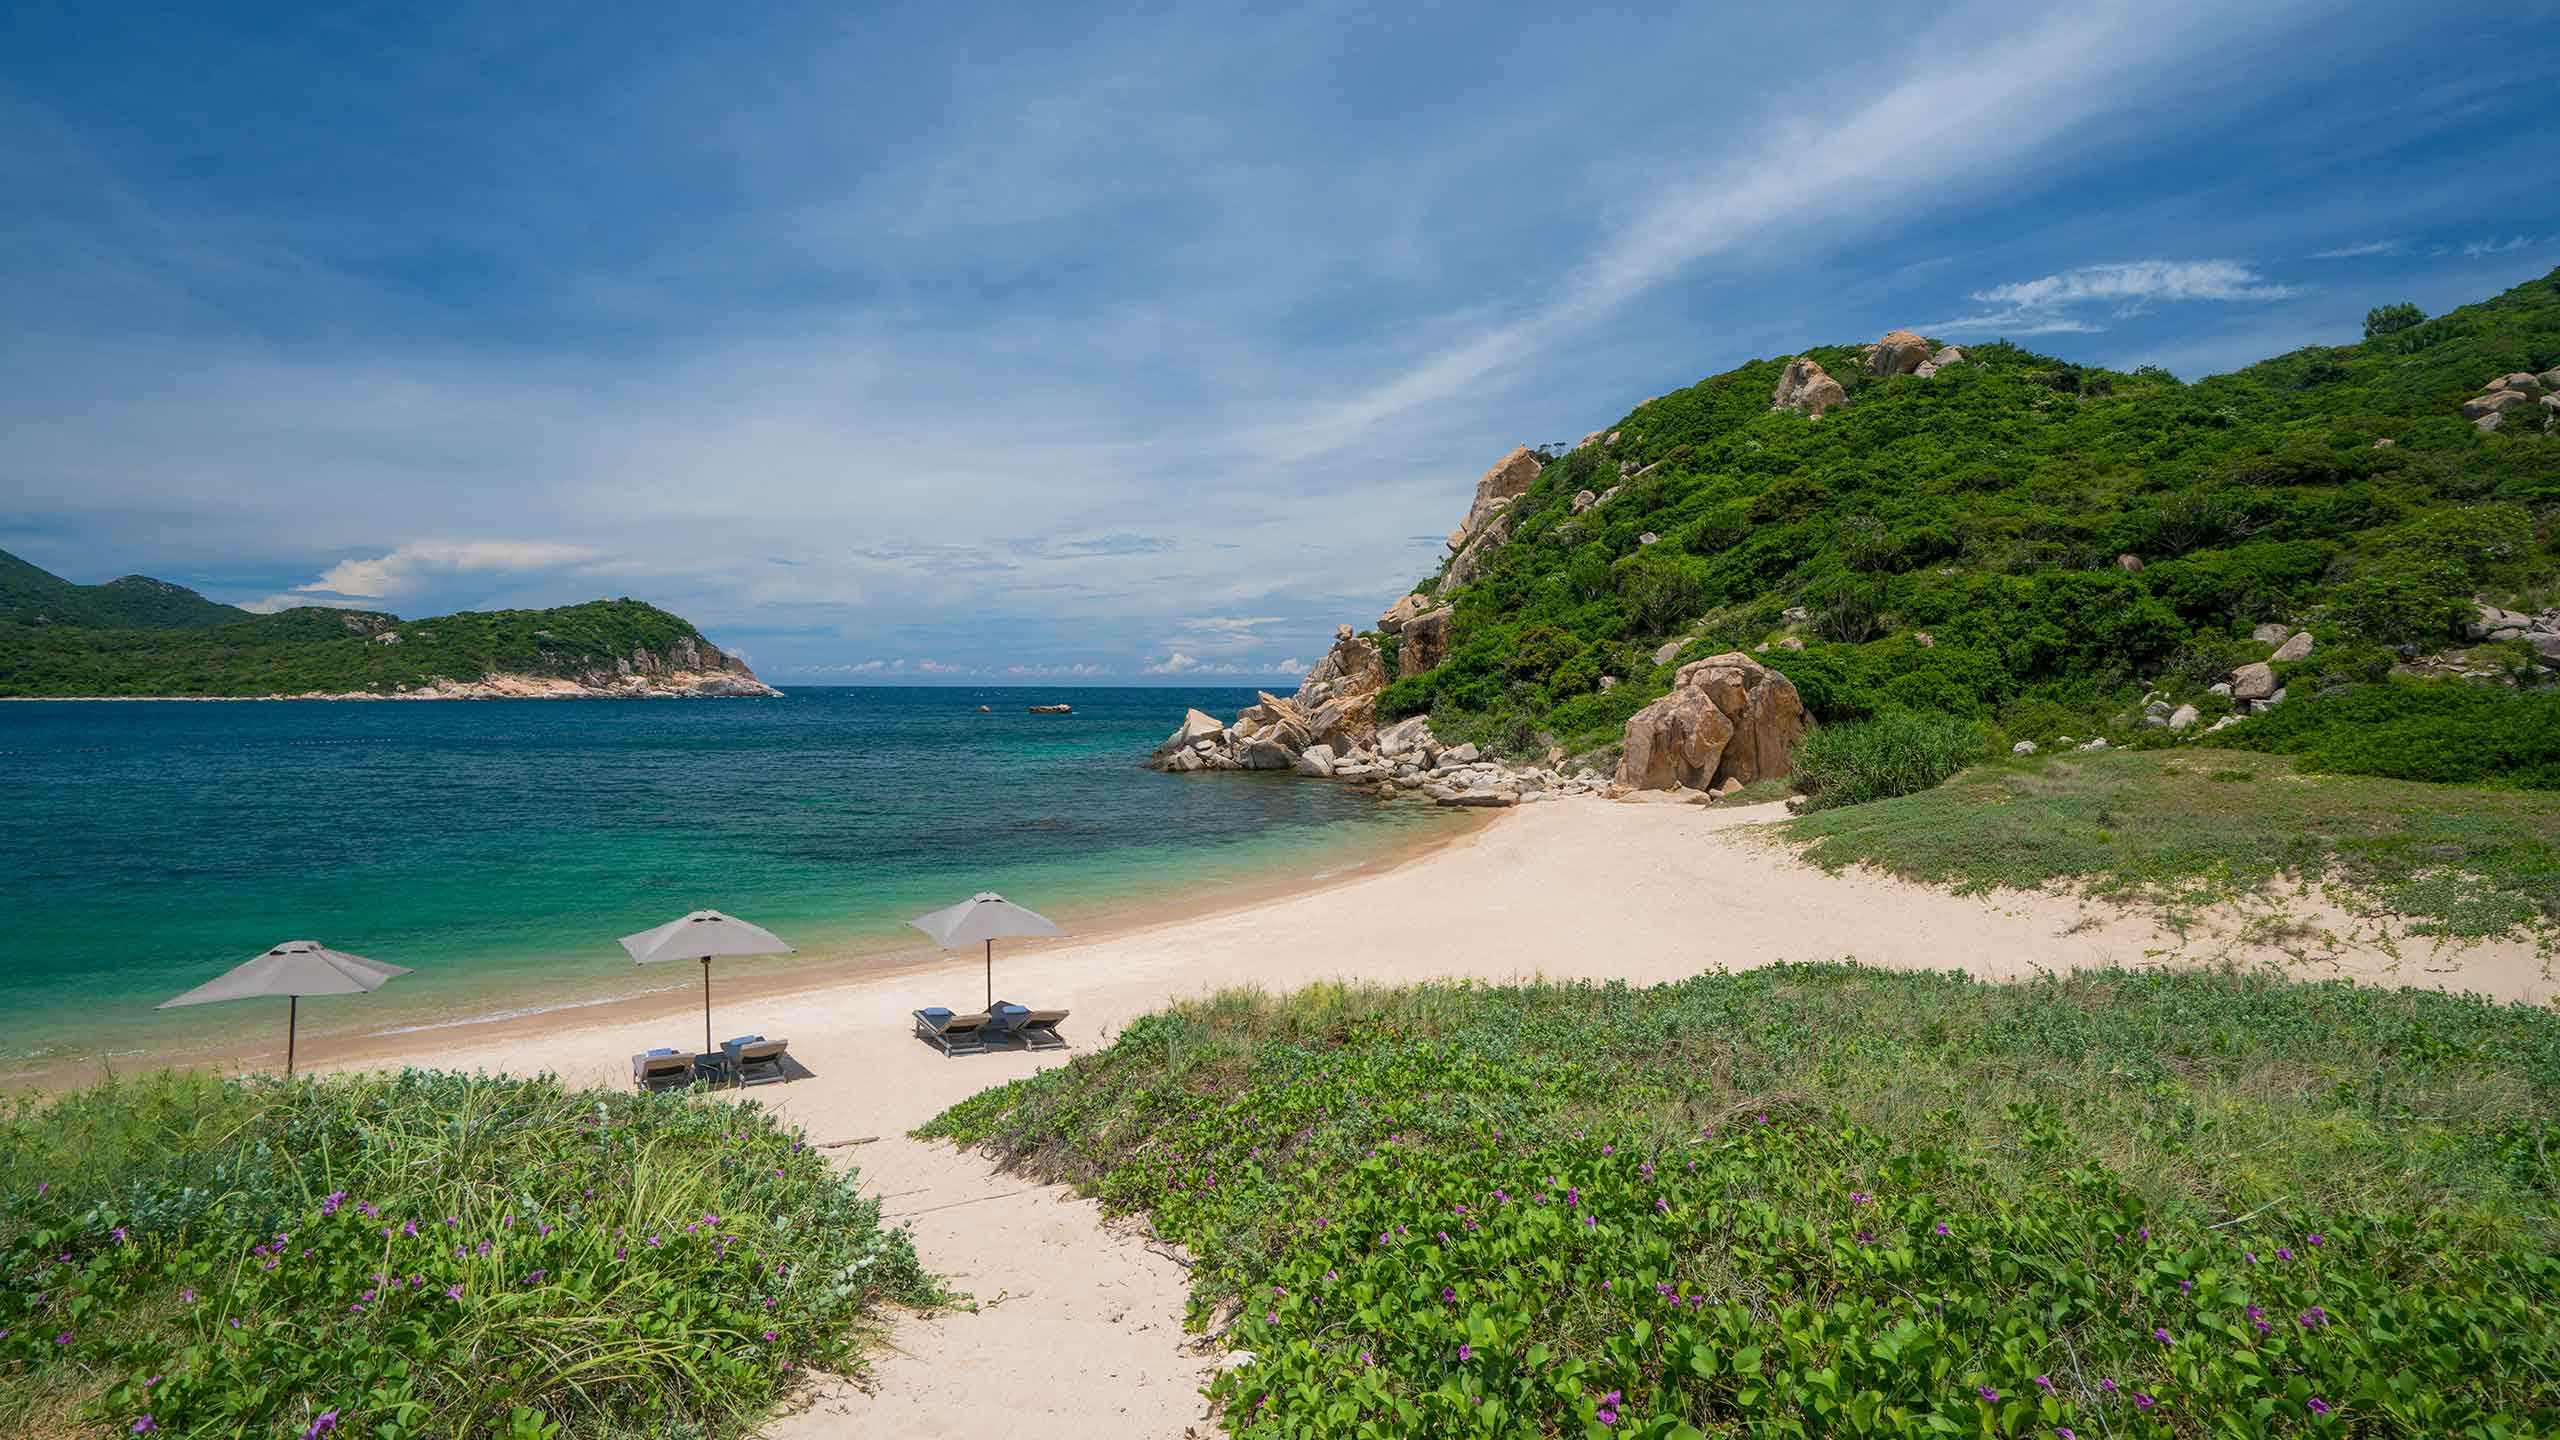 amanoi-vietnam-vihn-hy-resort-and-beach-pathway